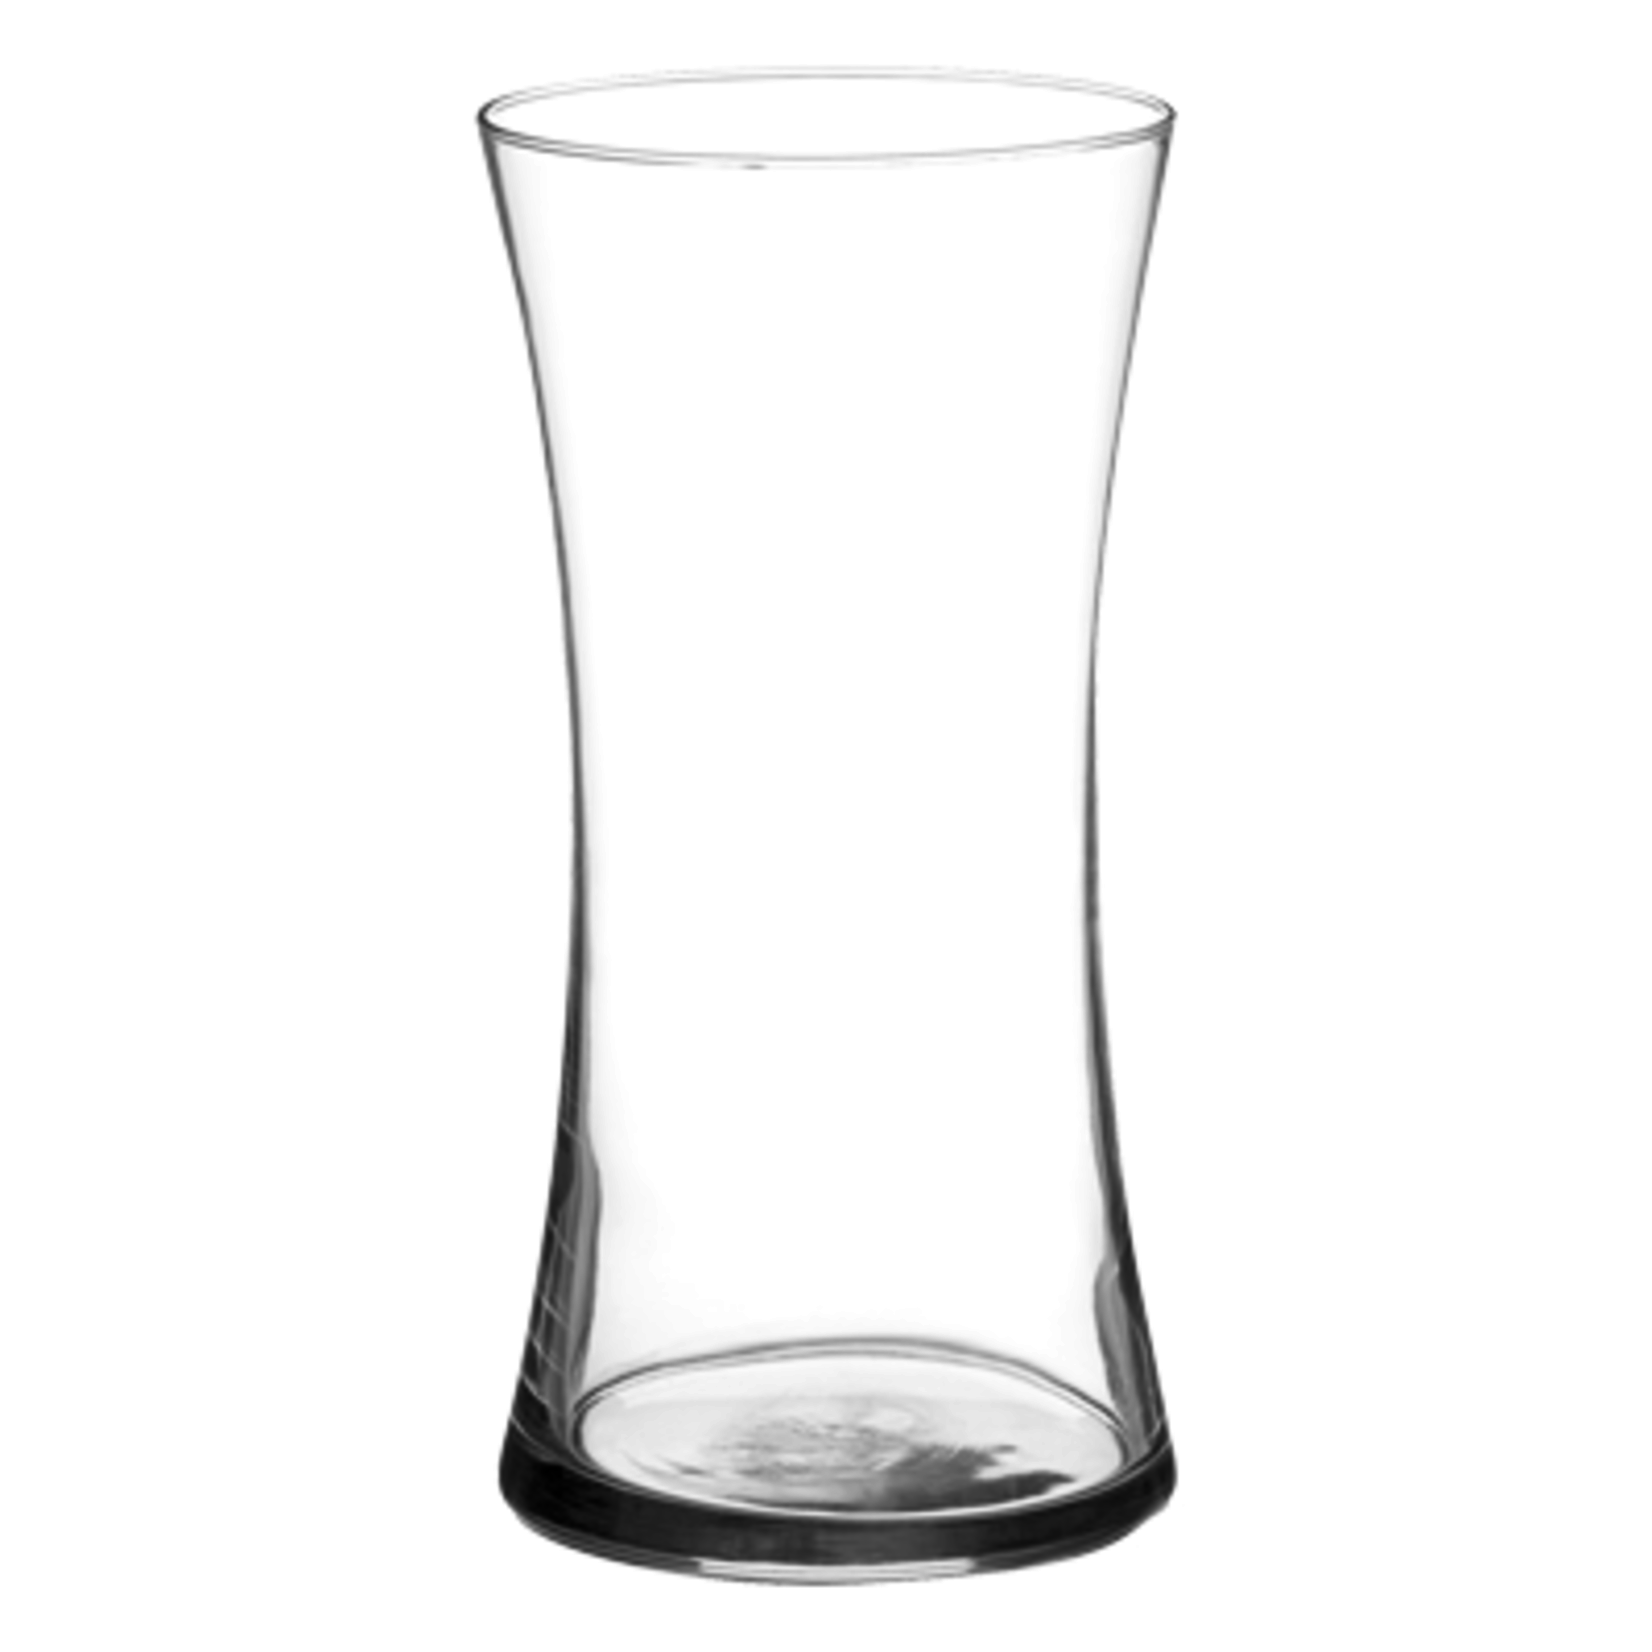 8"H X 4" Slender Gathering Vase - Crystal